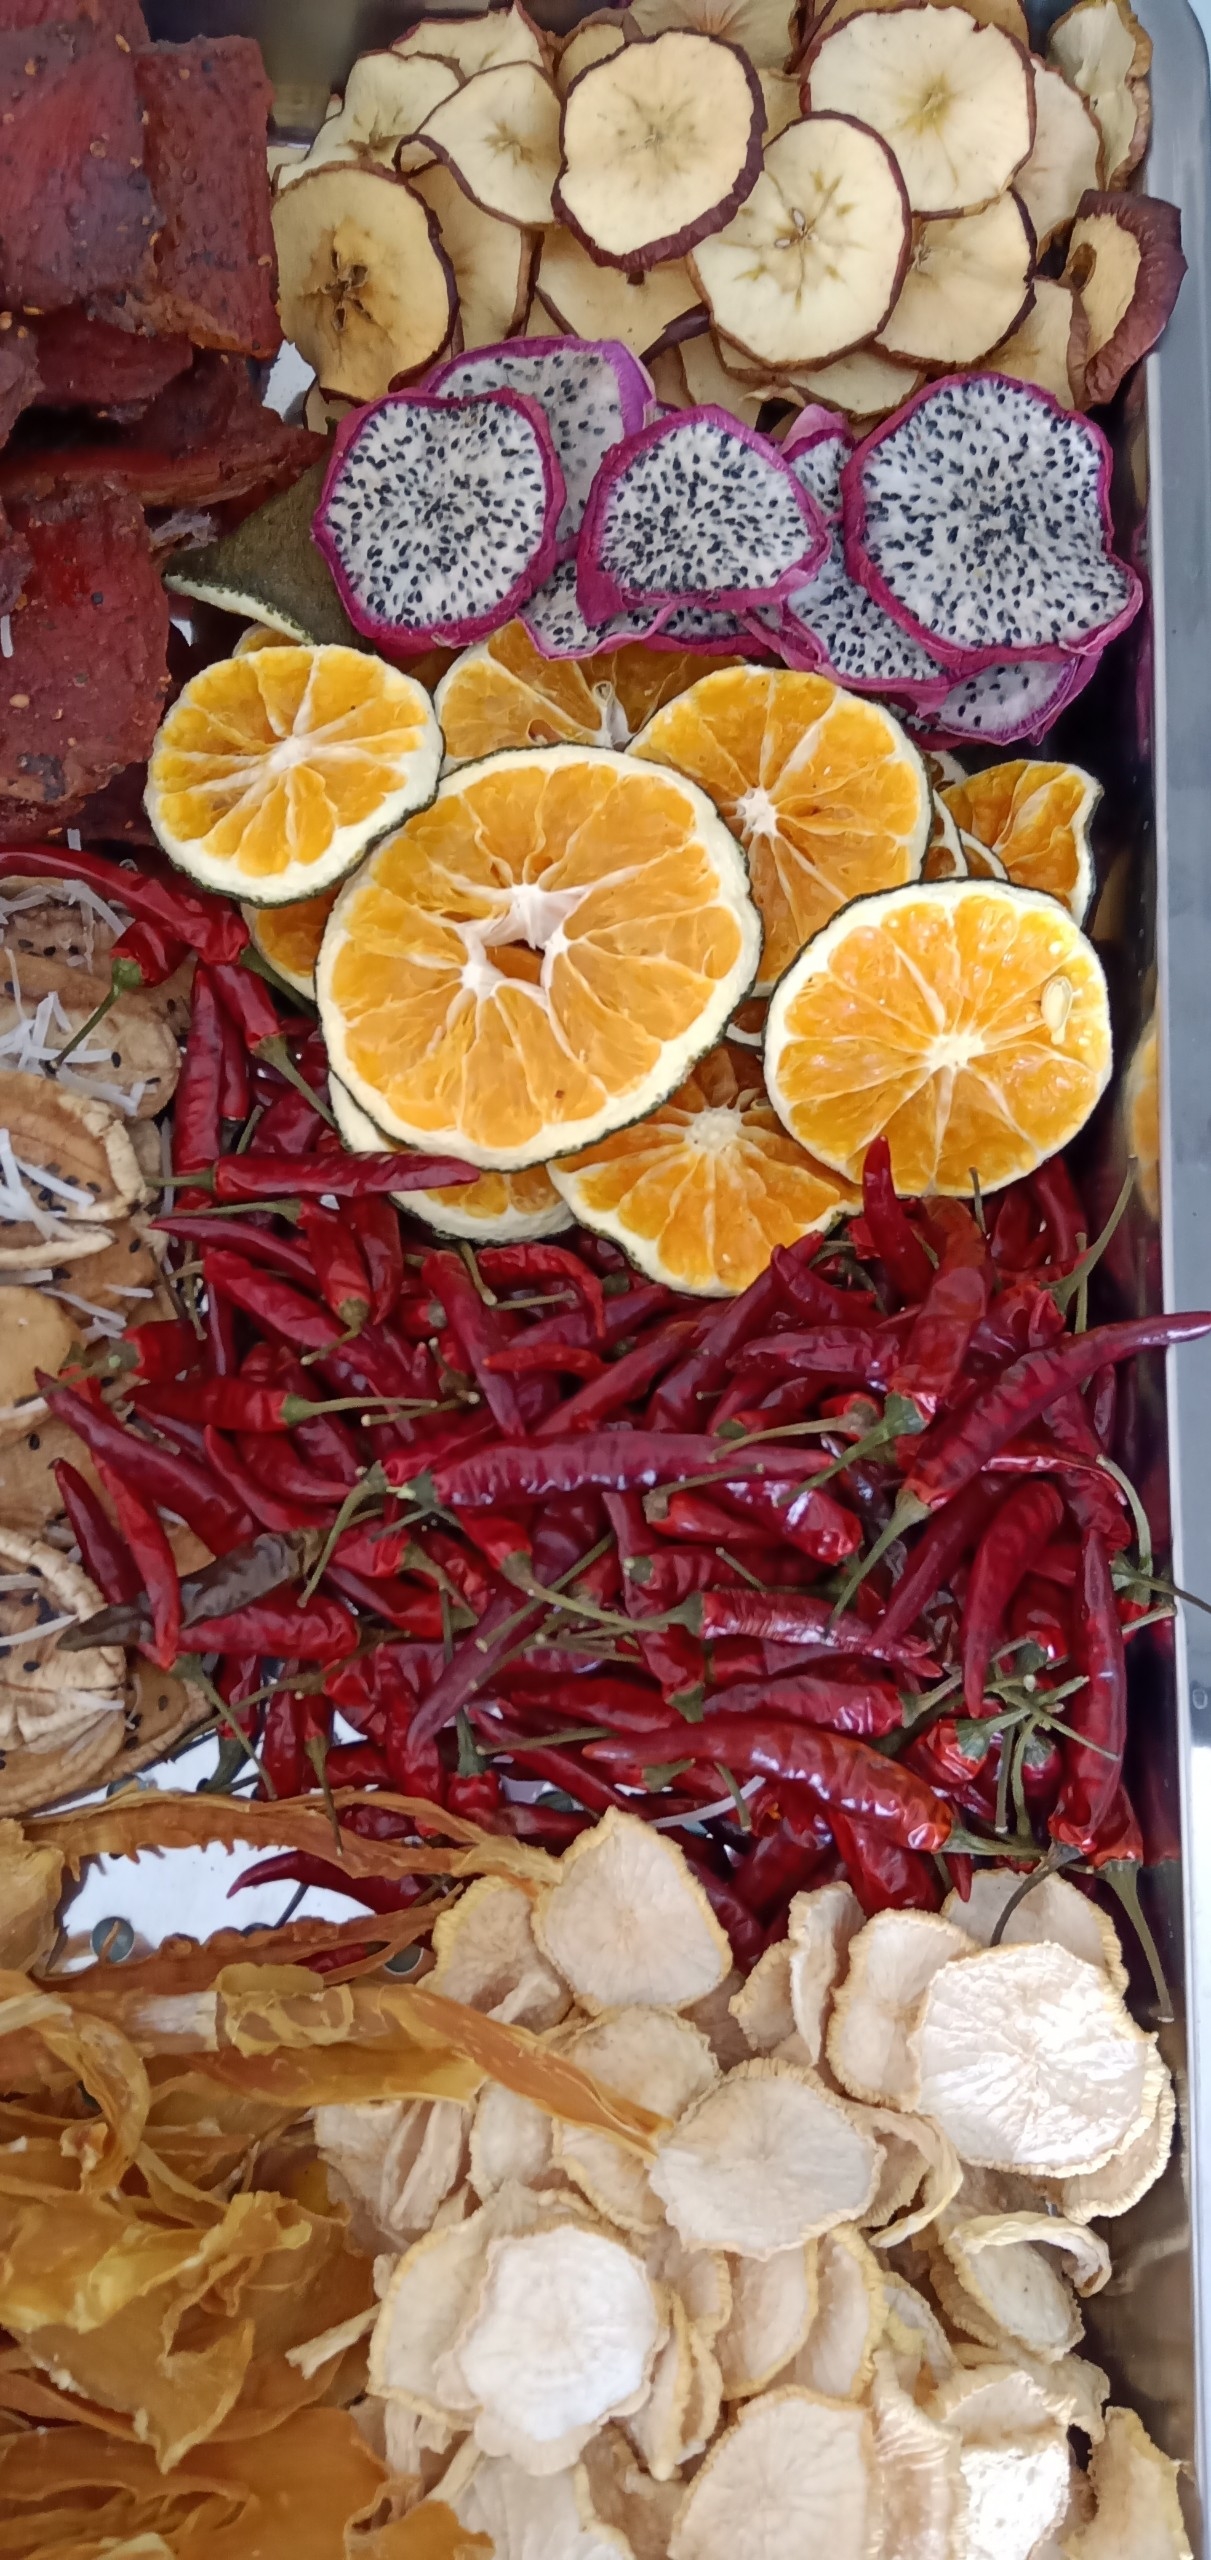 Máy Sấy Nông Sản Đa Năng Bình Minh - Chuyên sấy thịt, cá, rau củ, hoa quả